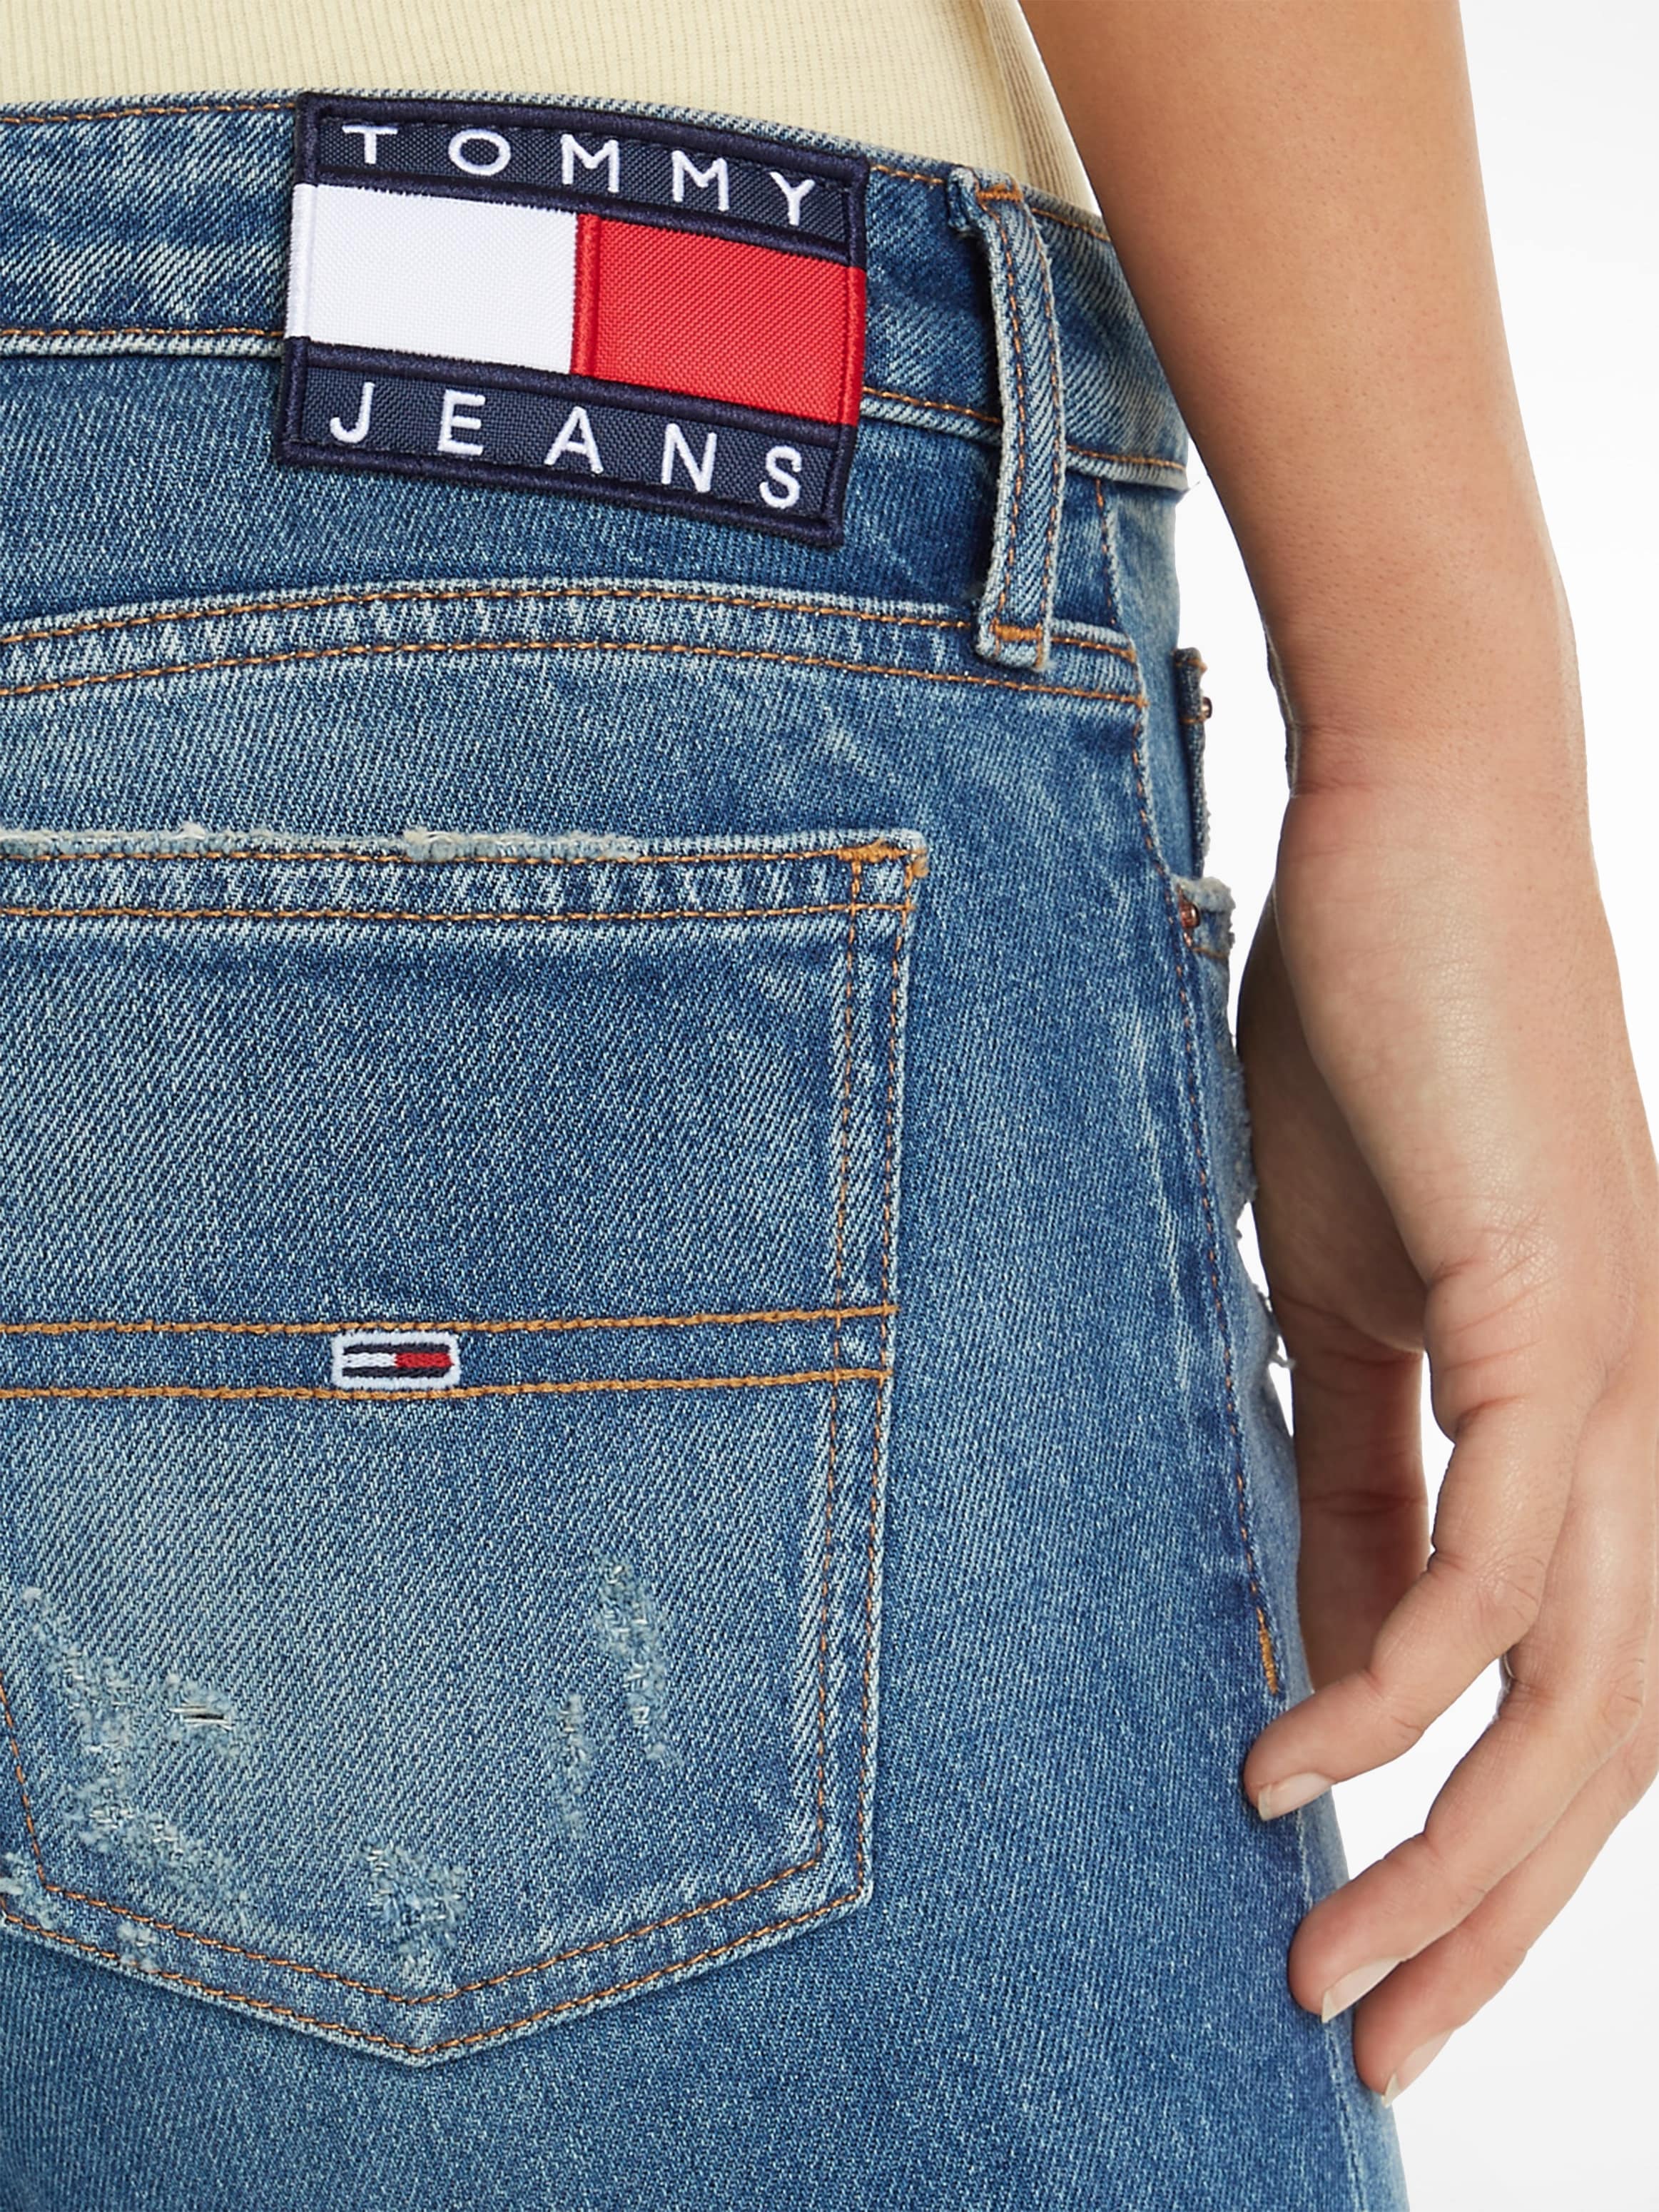 mit für Schlagjeans, Tommy Jeans | Tommy Jeans Logobadge BAUR kaufen